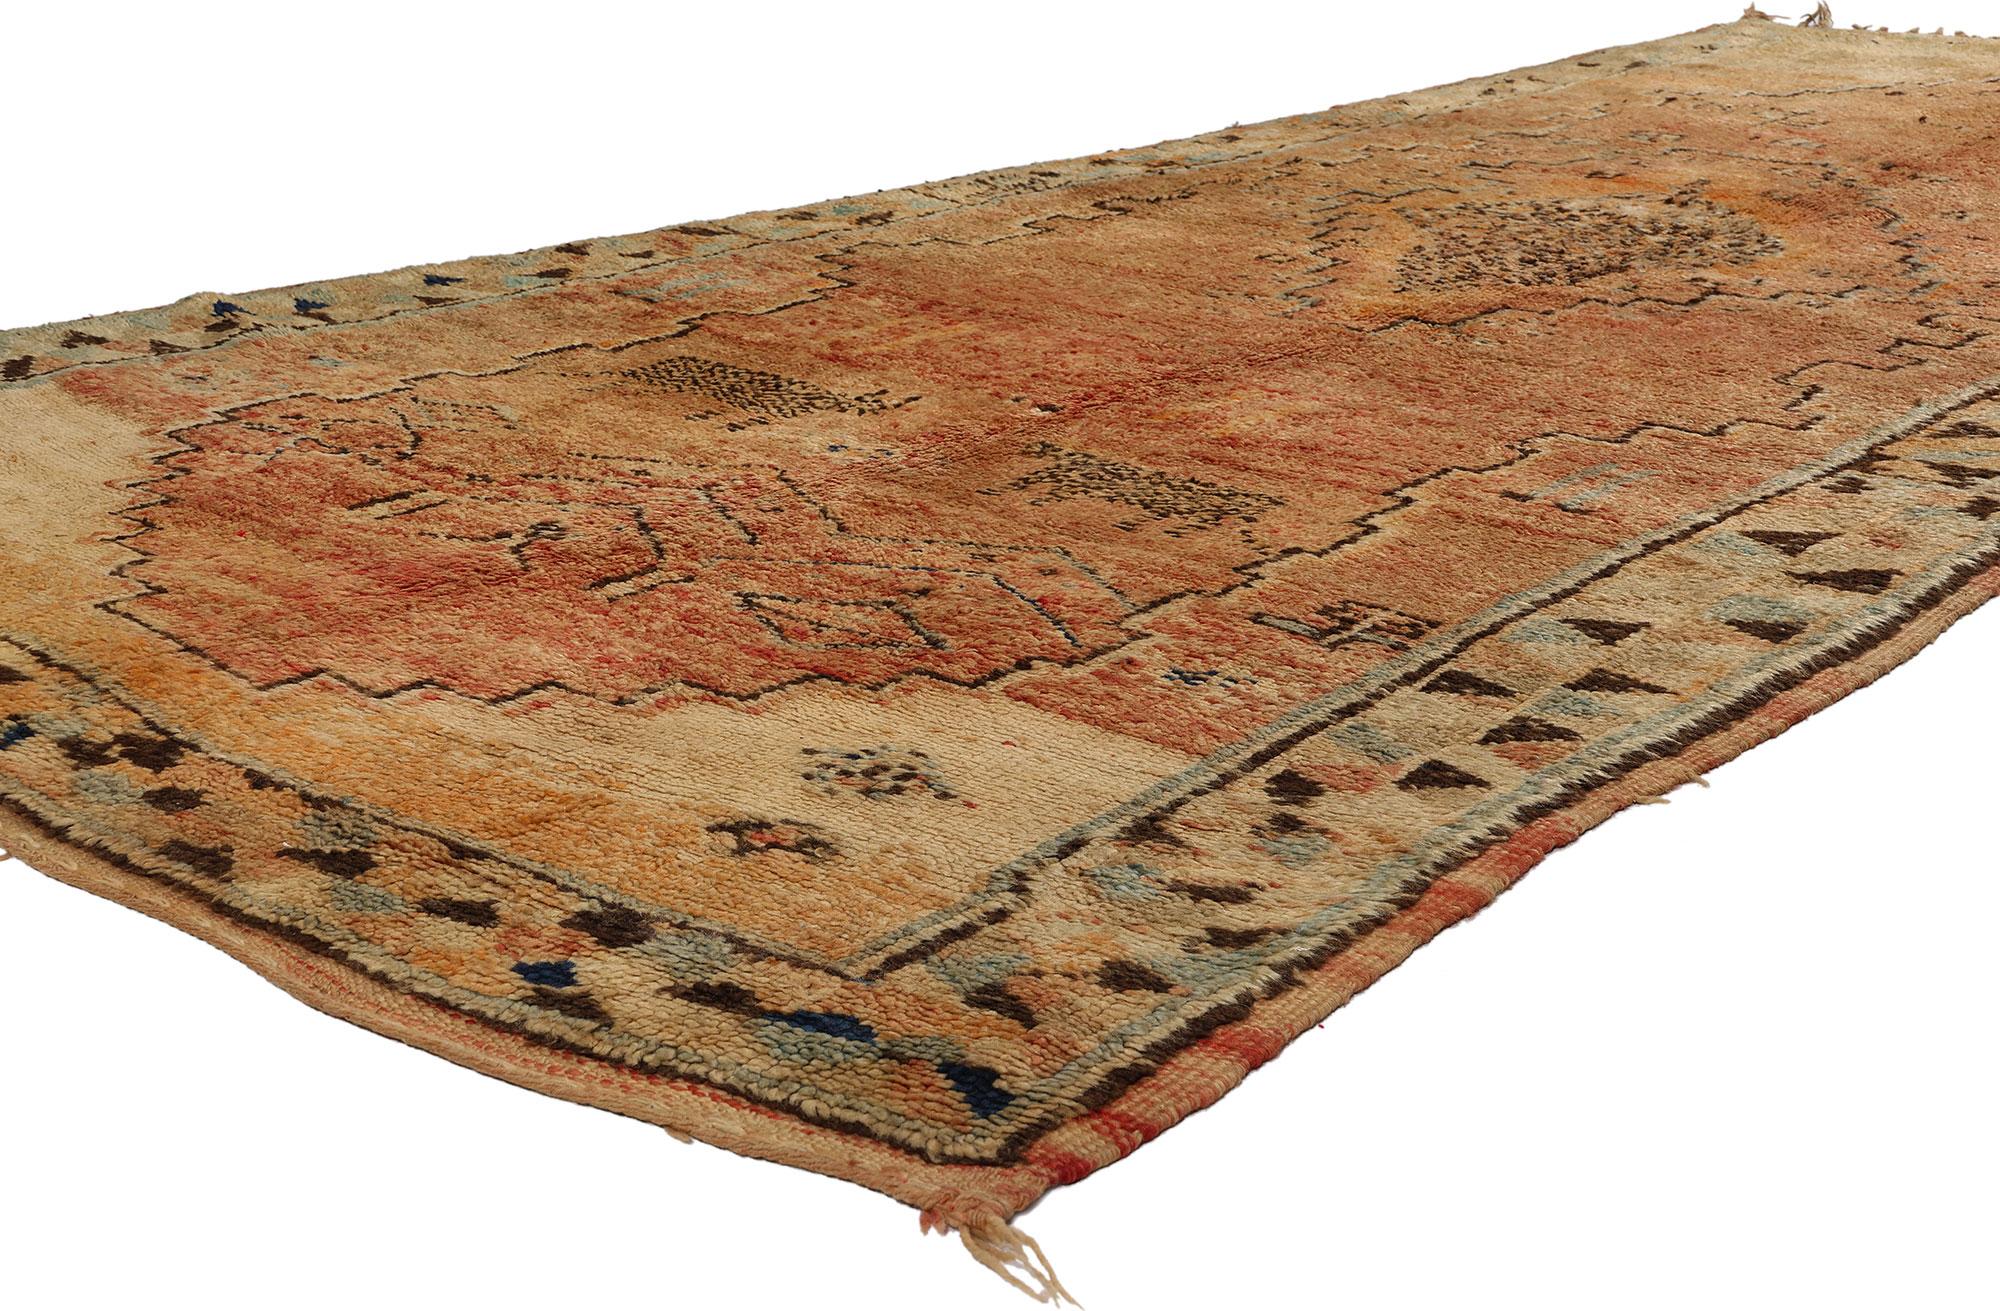 21774 Vintage Boujad Marokkanischer Teppich, 04'10 x 10'10. Boujad-Teppiche, die handgewebten Schmuckstücke aus der marokkanischen Boujad-Region, verkörpern die lebendige Kunstfertigkeit, die über Generationen hinweg von Berberstämmen, insbesondere